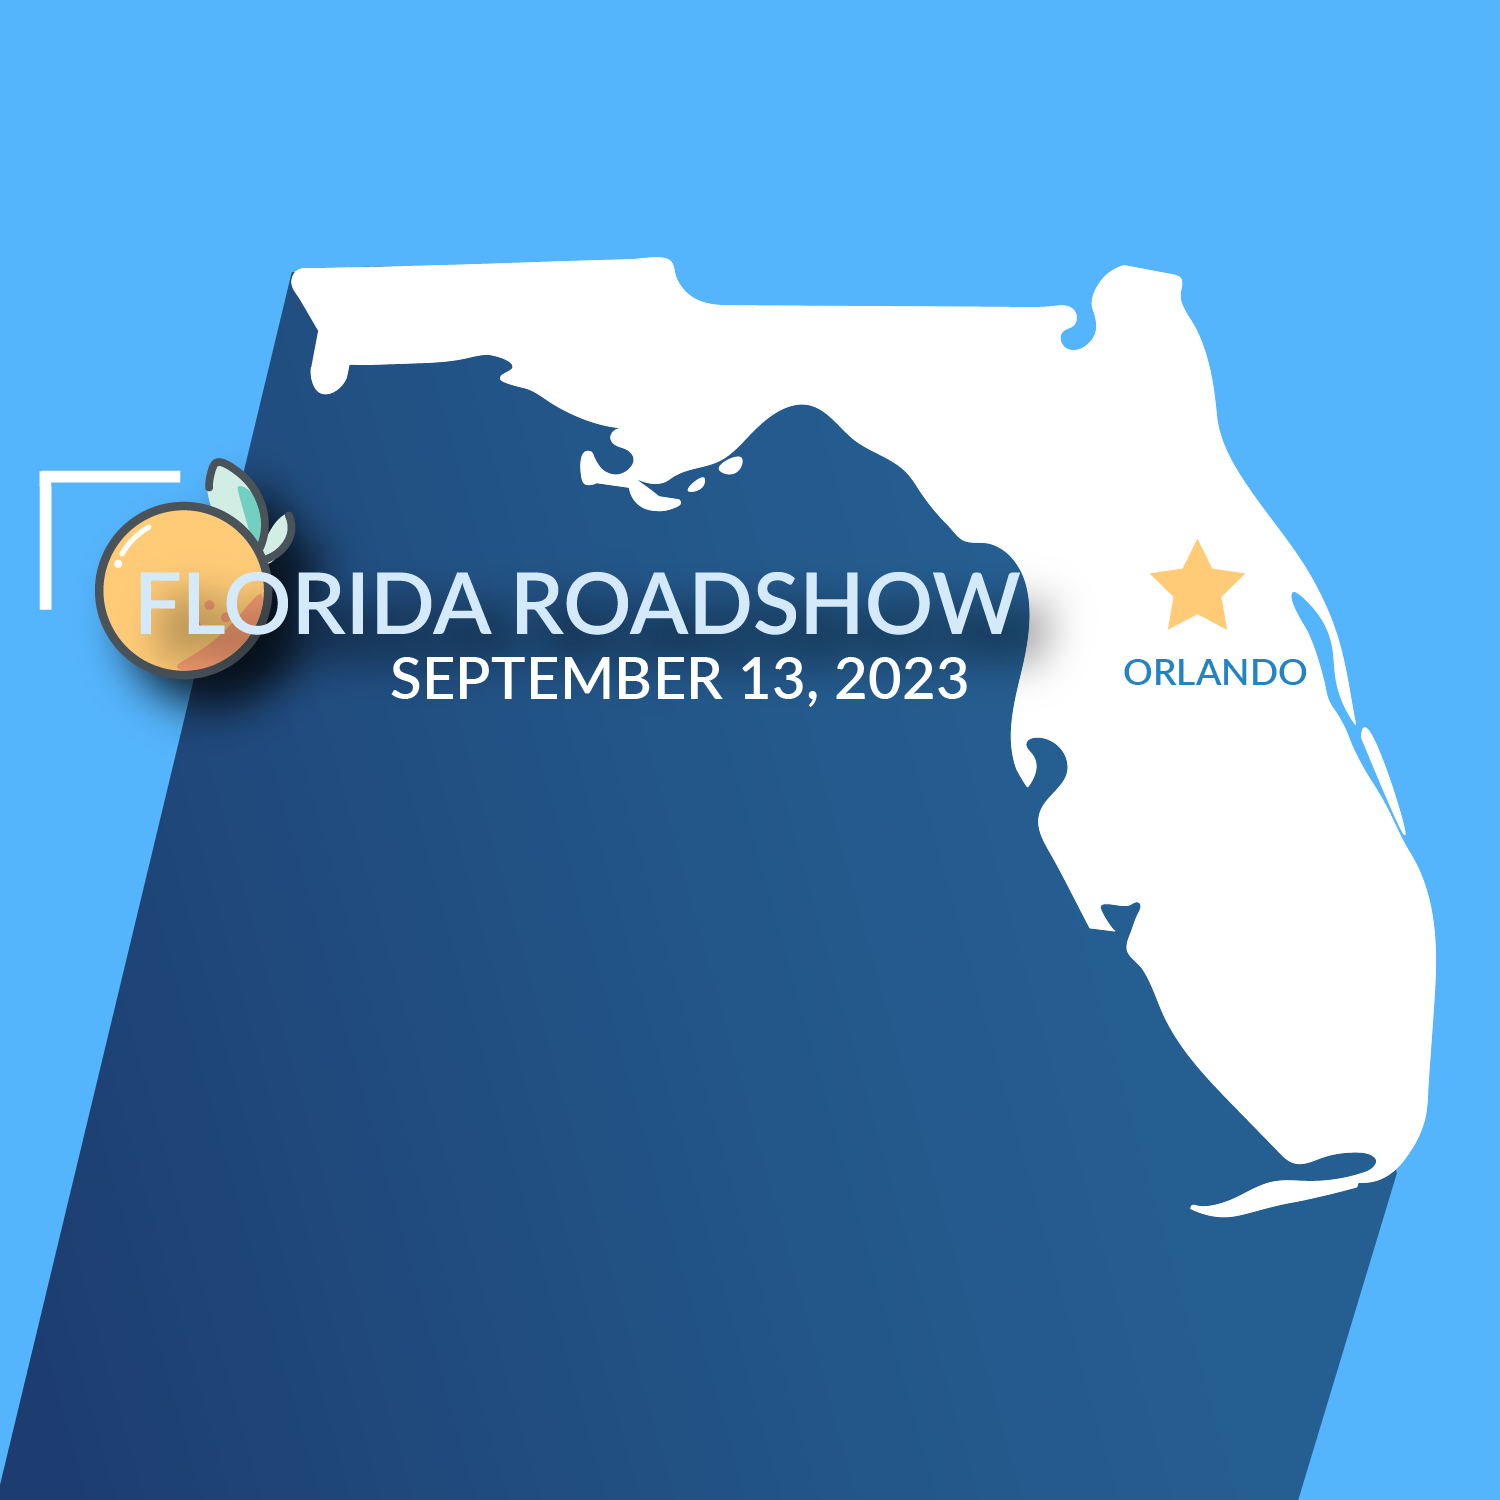 DIU_Florida_Roadshow_v2